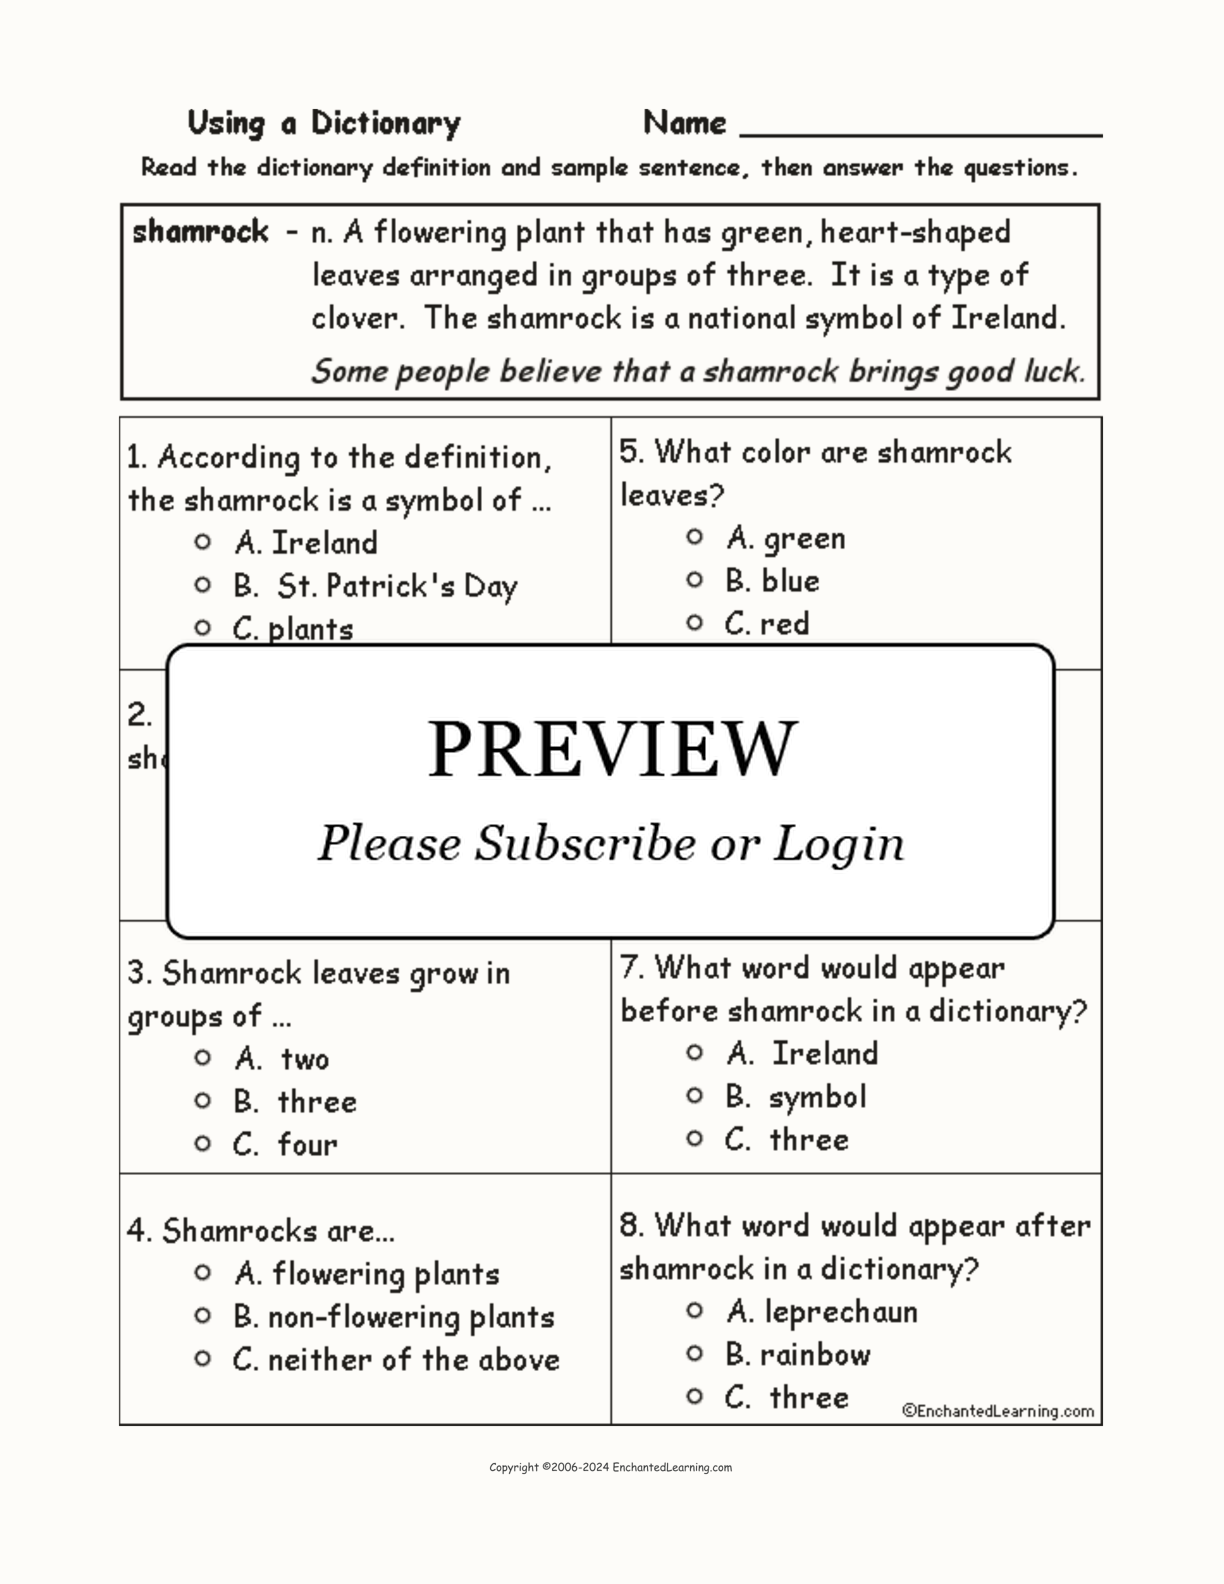 Shamrock Definition Quiz interactive worksheet page 1